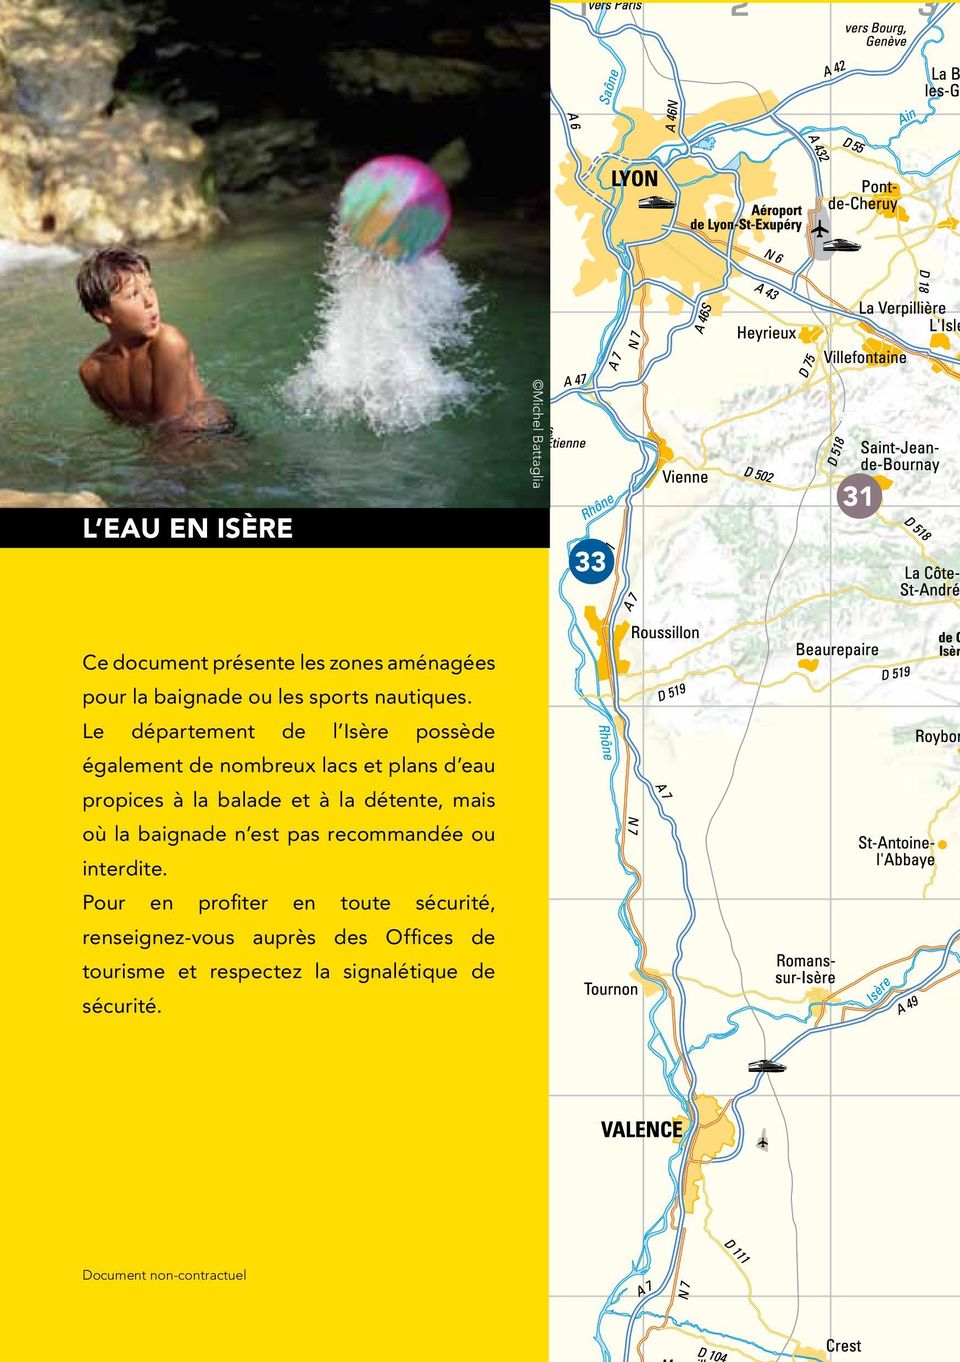 Le département de l Isère possède également de nombreux lacs et plans d eau propices à la balade et à la